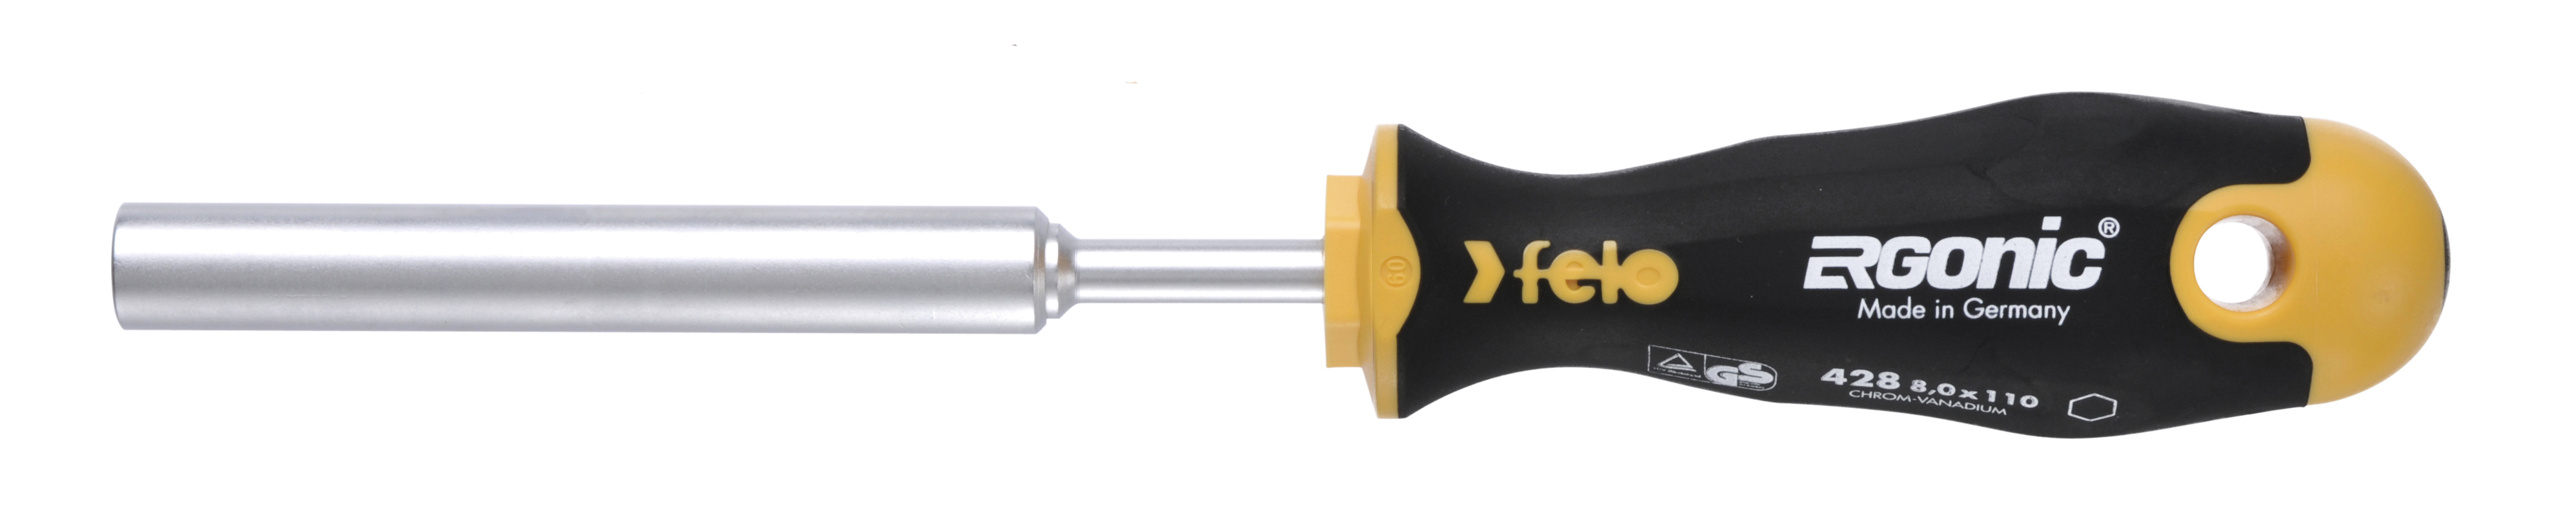 Отвертка Felo Ergonic M-TEC 42808030 торцевой ключ 8,0X110 диэлектрический ключ отвёртка izeltas 4773190090 1000v торцевой 9мм длина 230 мм